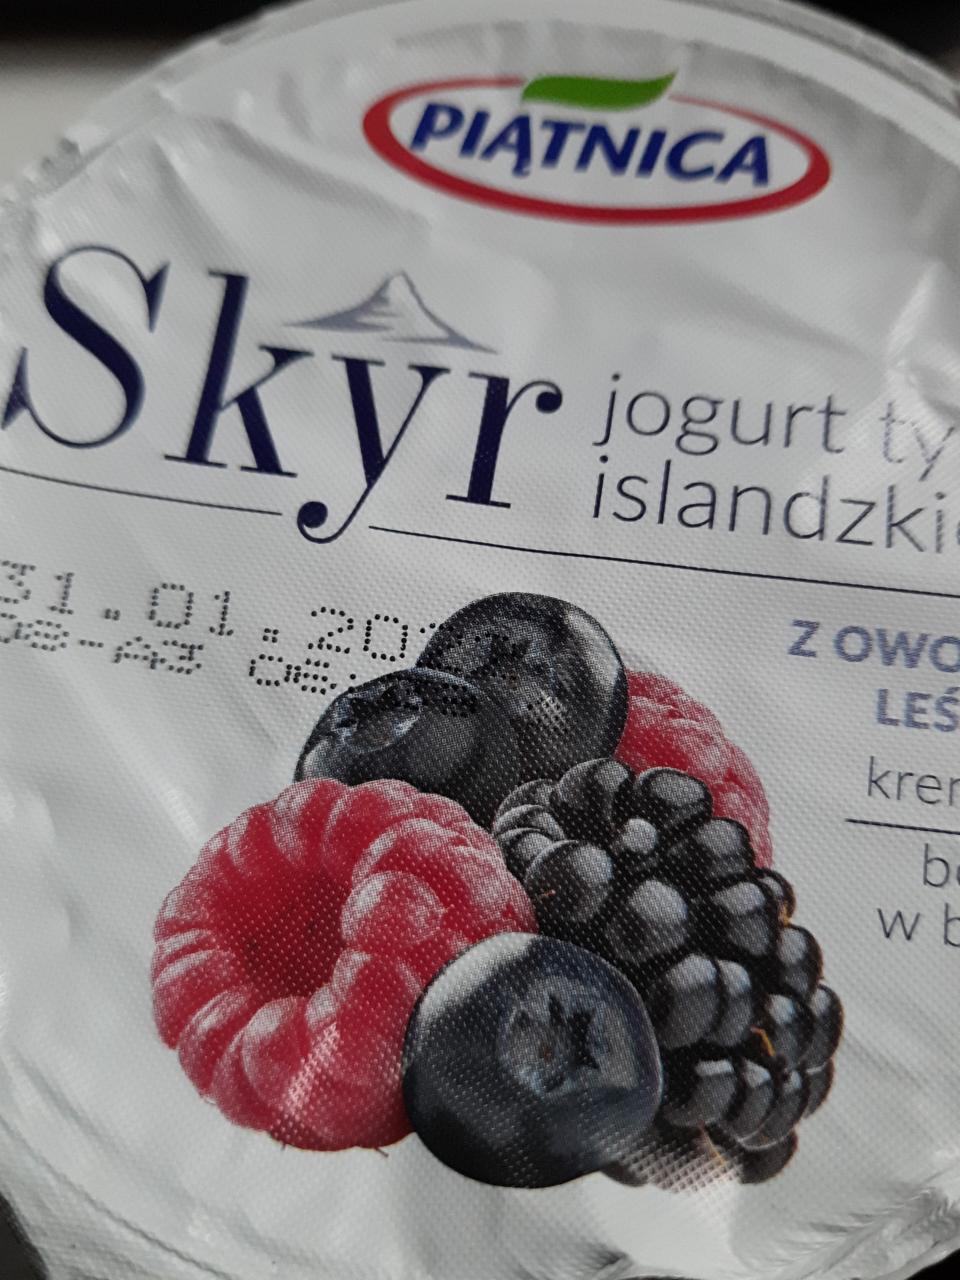 Fotografie - Jogurt typu islandzkiego z owocami leśnymi Piątnica